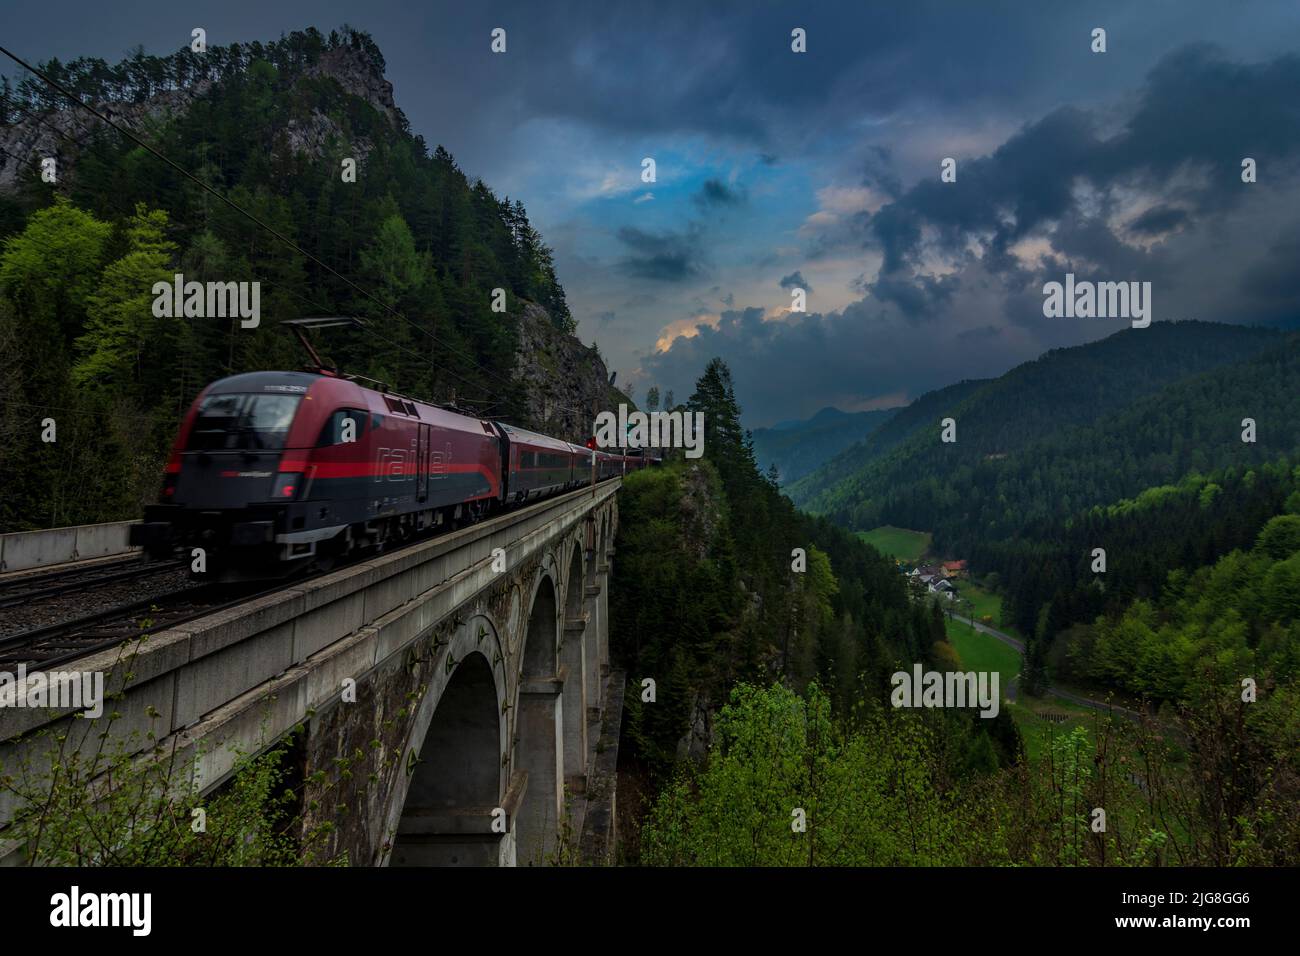 Breitenstein, Semmeringbahn (Semmering Railway), viaduct Krausel-Klause-Viadukt, rock face Spießwand, Railjet train in the Vienna Alps, Lower Austria, Austria Stock Photo